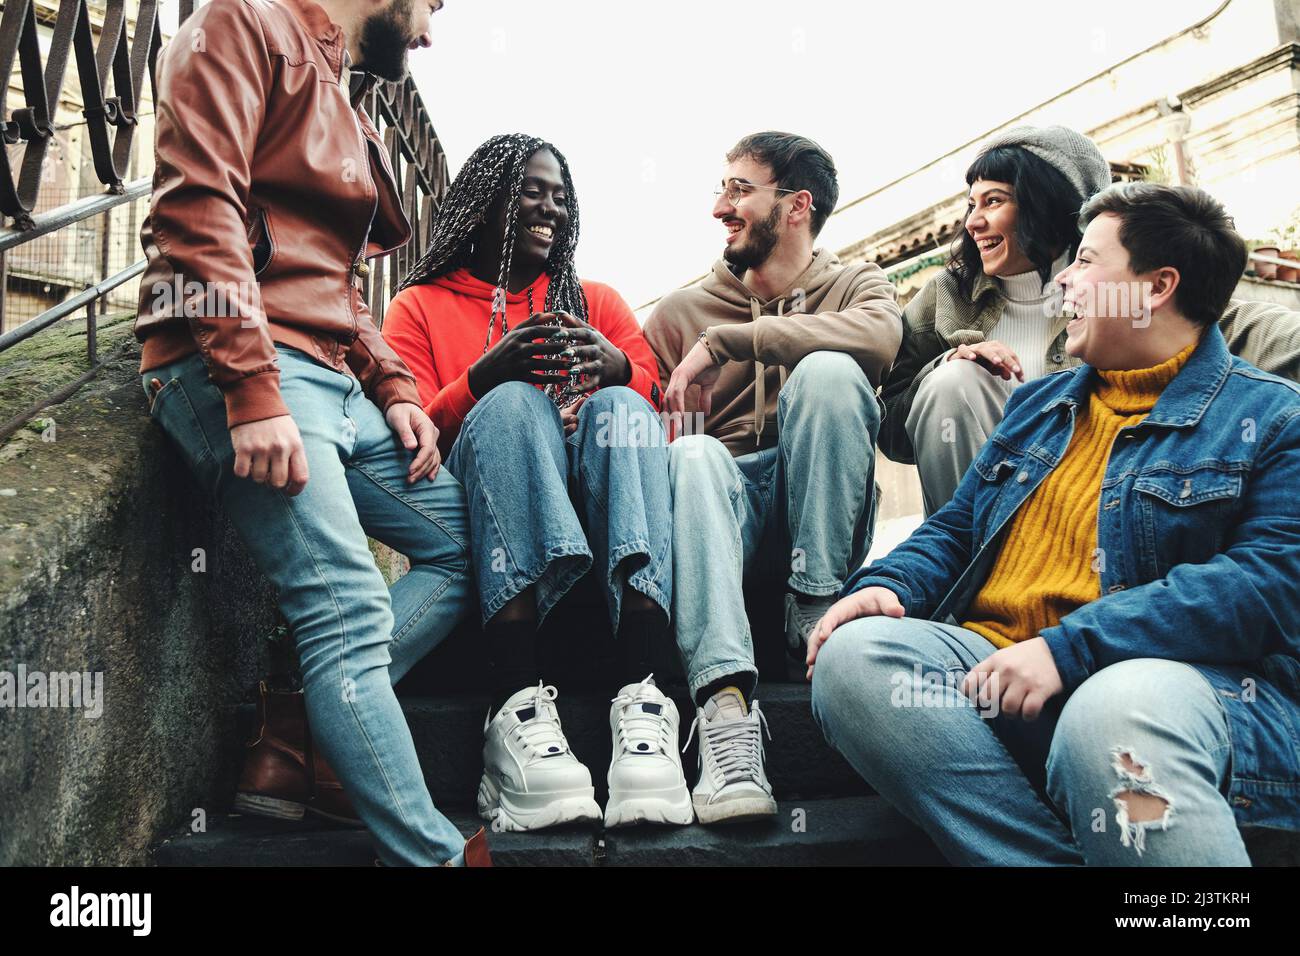 Reunión de compañeros de clase de jóvenes estudiantes multi-culturales sentados en la escalera divirtiéndose charlando juntos Foto de stock